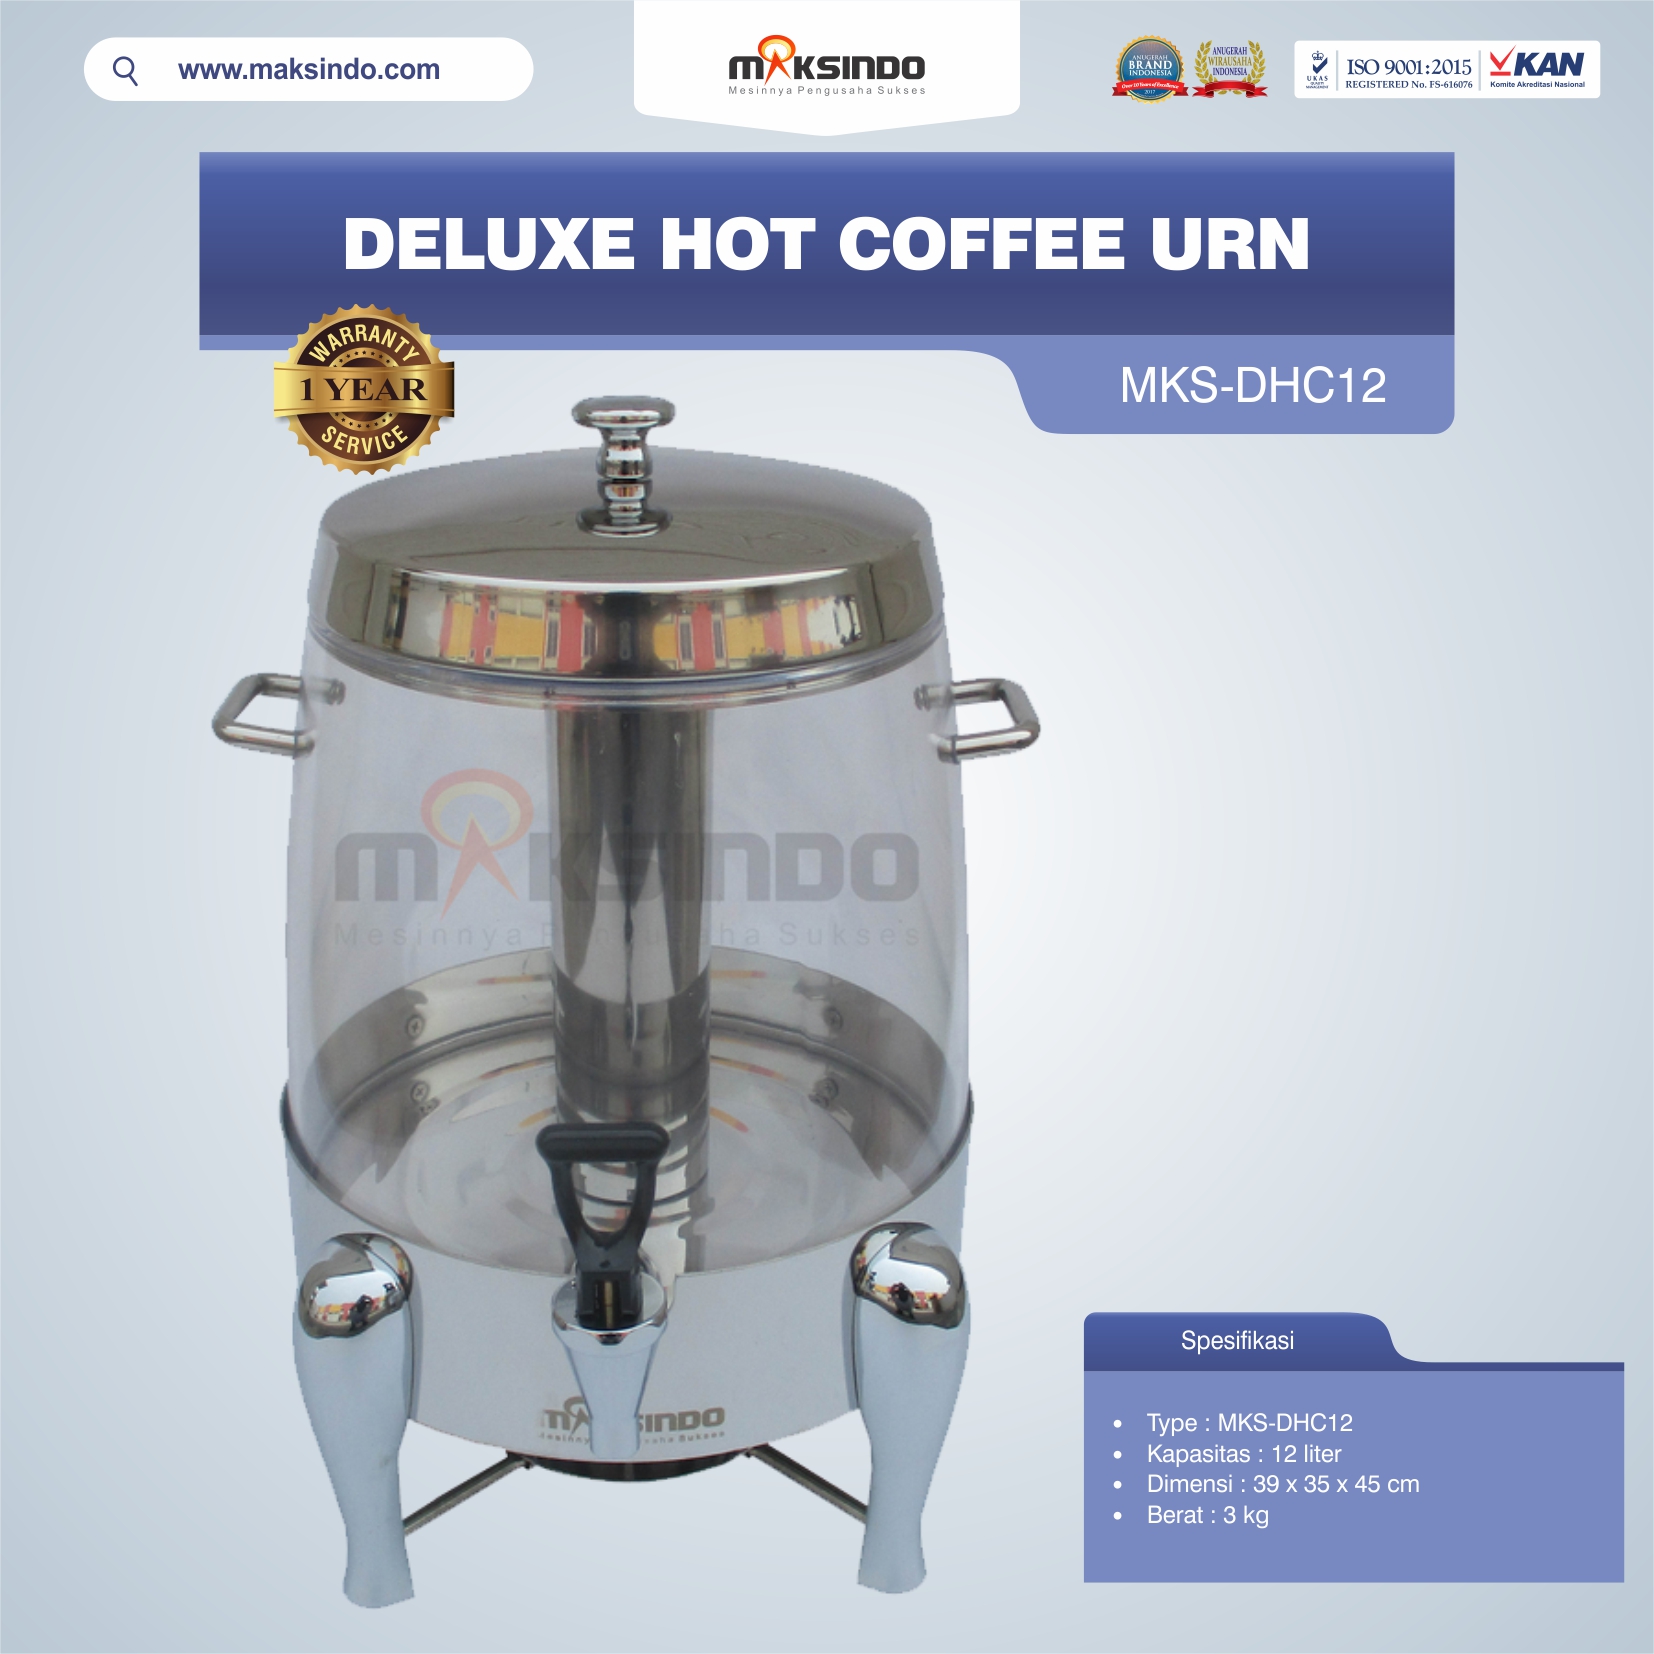 Jual Deluxe Hot Coffee Urn MKS-DHC12 di Blitar